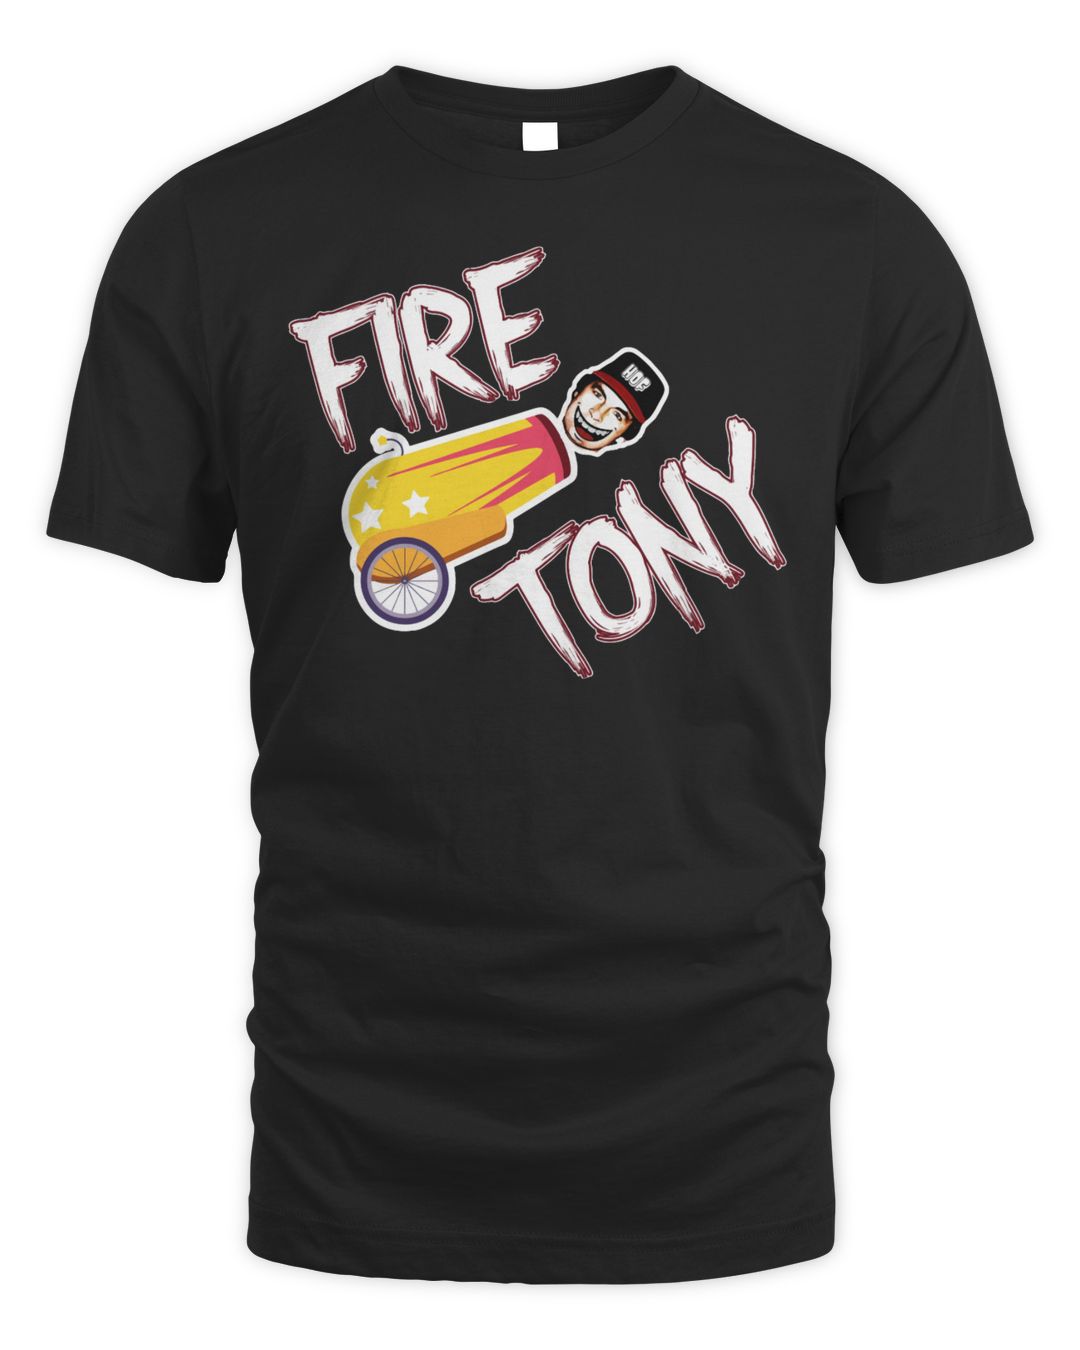 Fire Tony Shirt